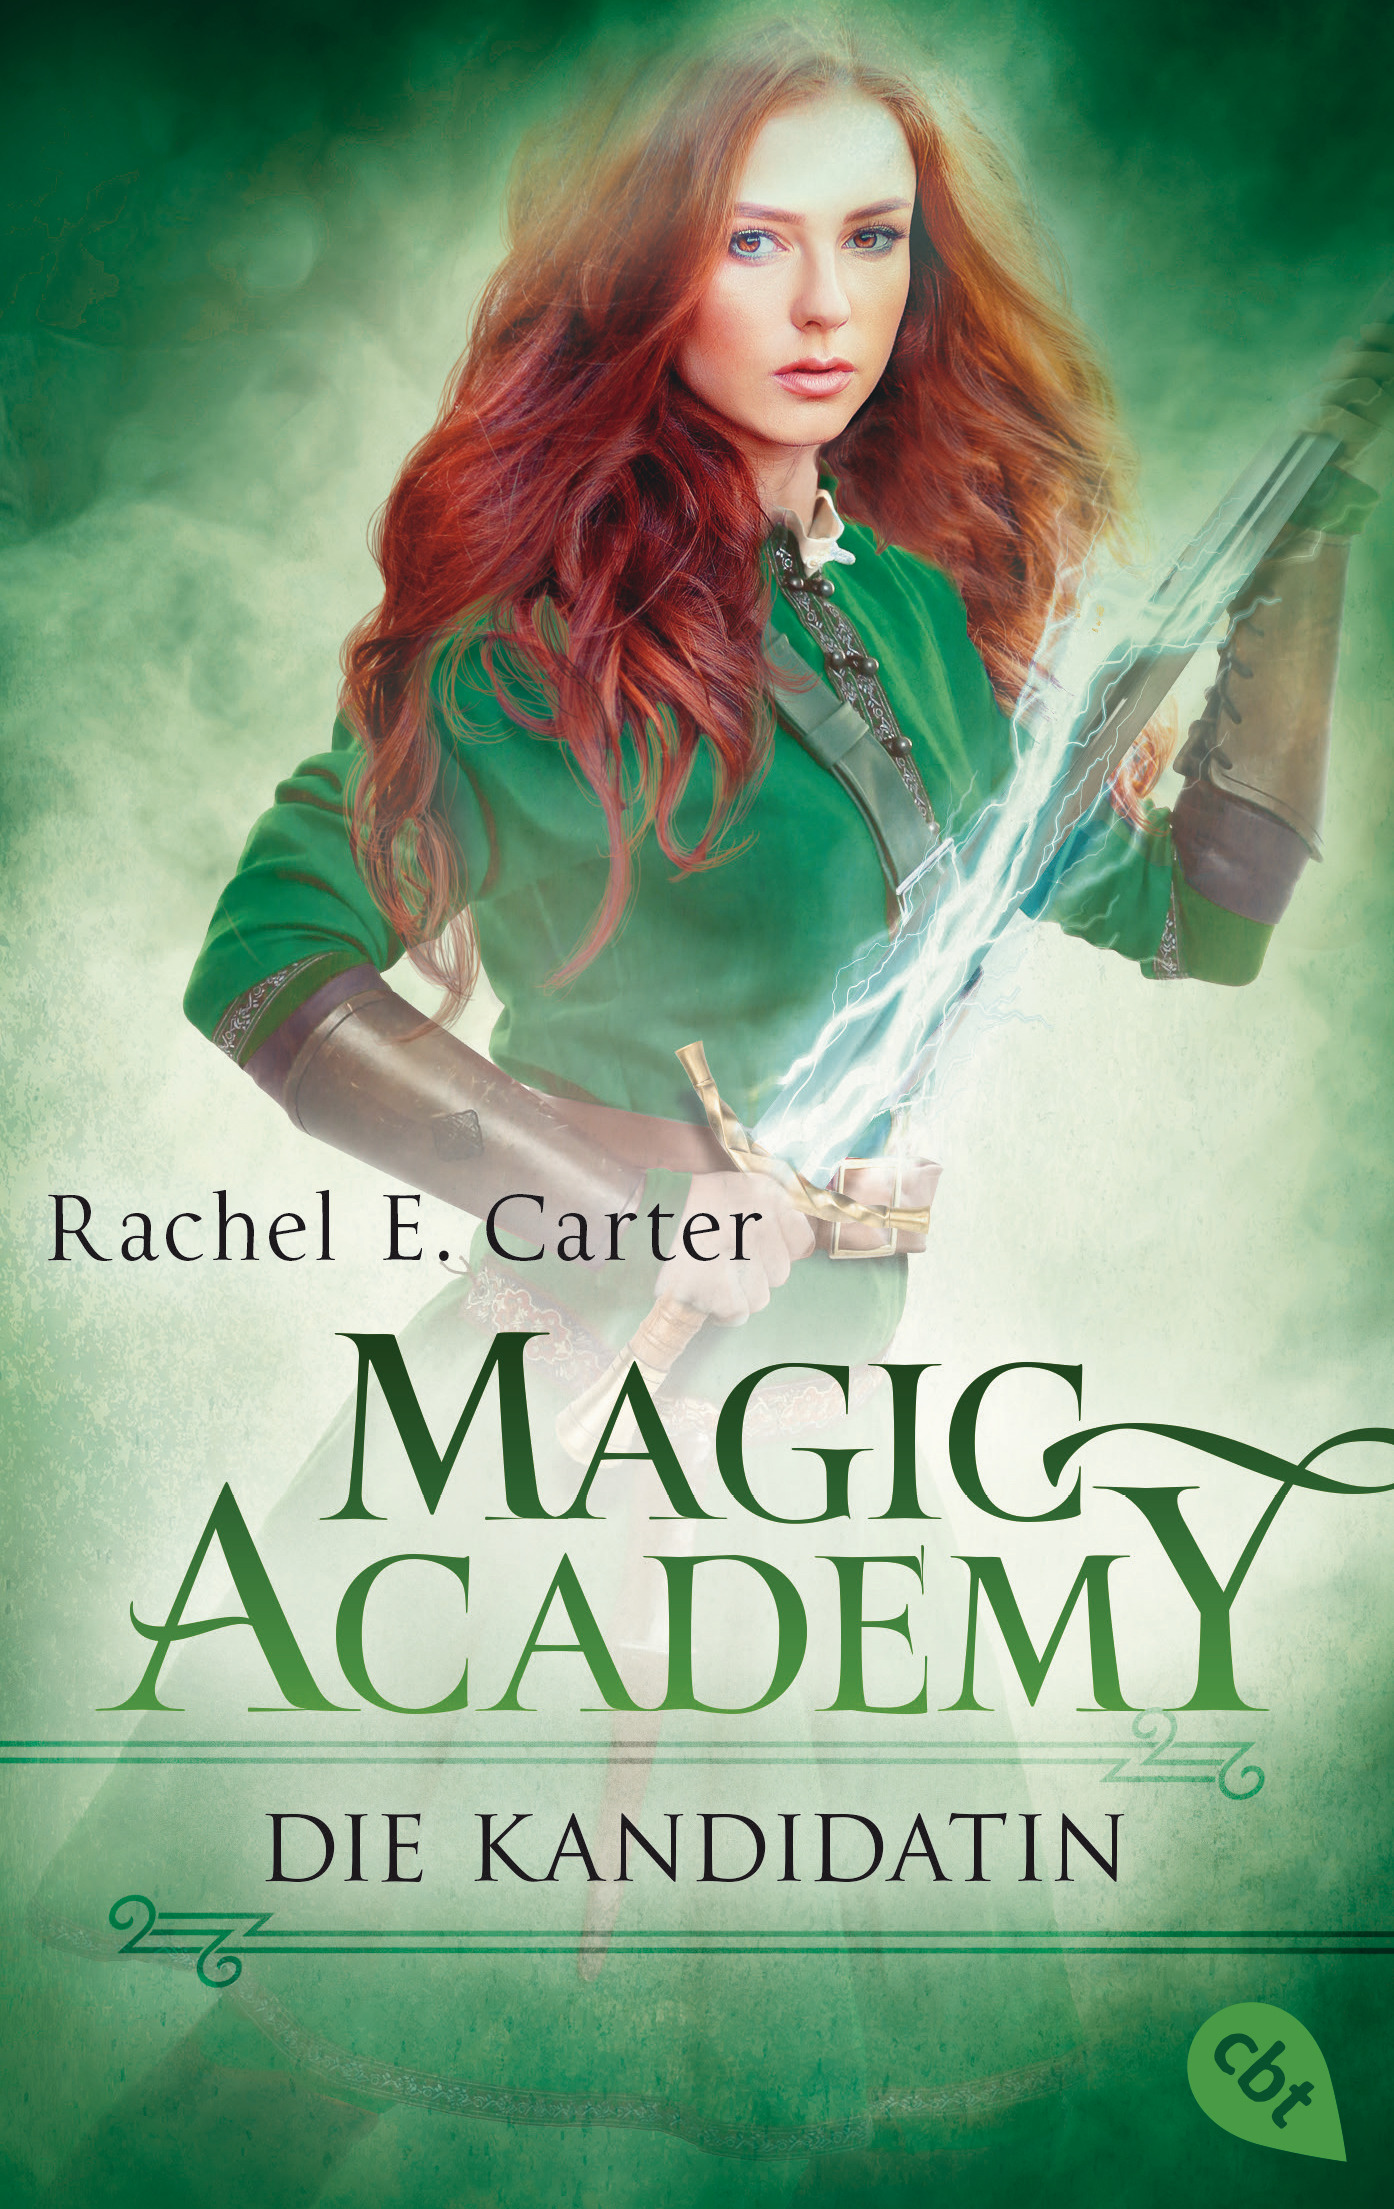 https://www.randomhouse.de/Taschenbuch/Magic-Academy-Die-Kandidatin/Rachel-E-Carter/cbj-Jugendbuecher/e536131.rhd